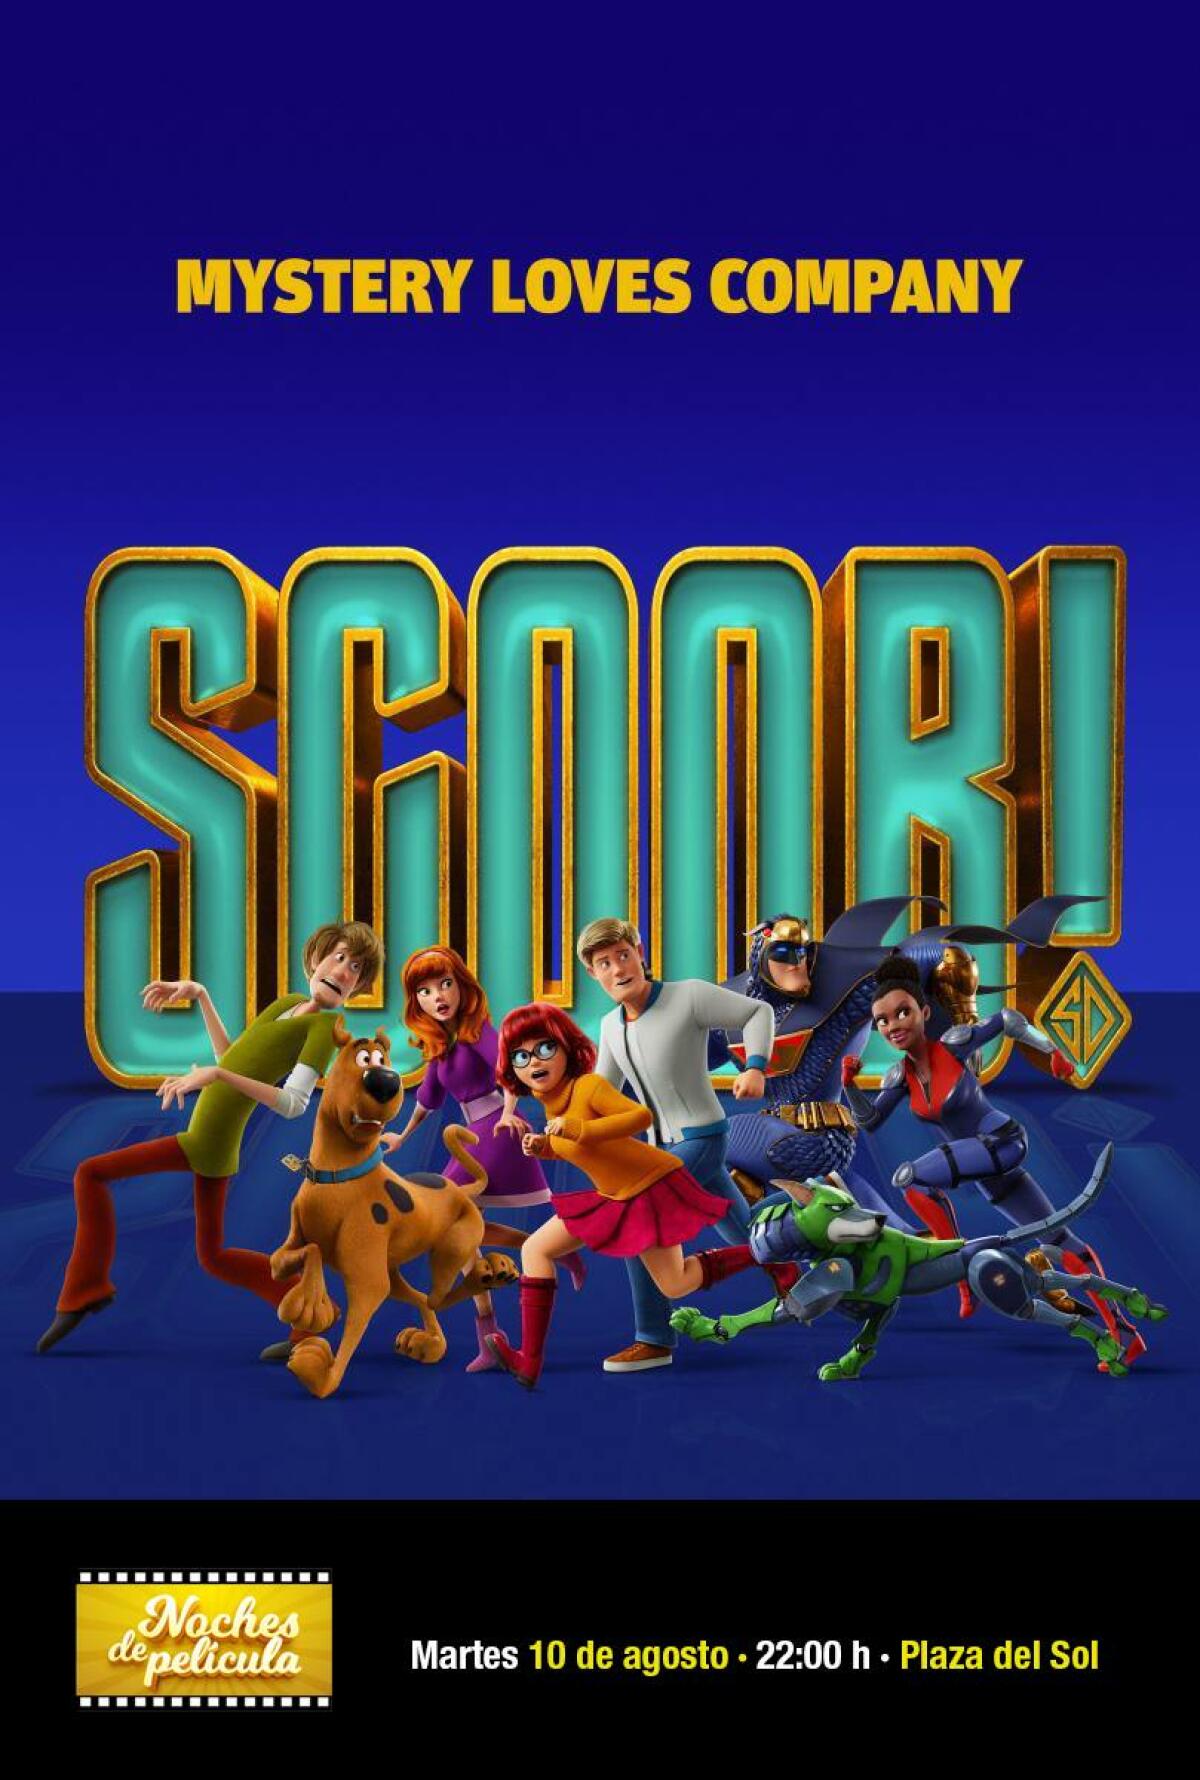 La película “¡Scooby!”(Scoob) en la plaza del Sol